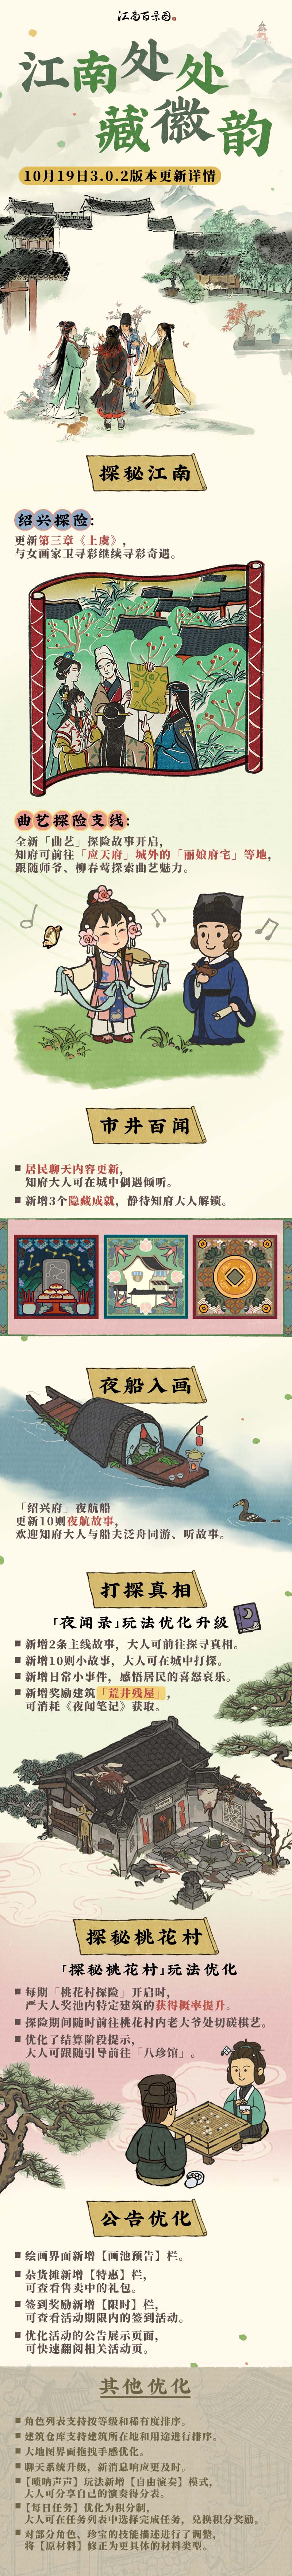 江南处处藏徽韵——江南百景图3.0.2版本上线